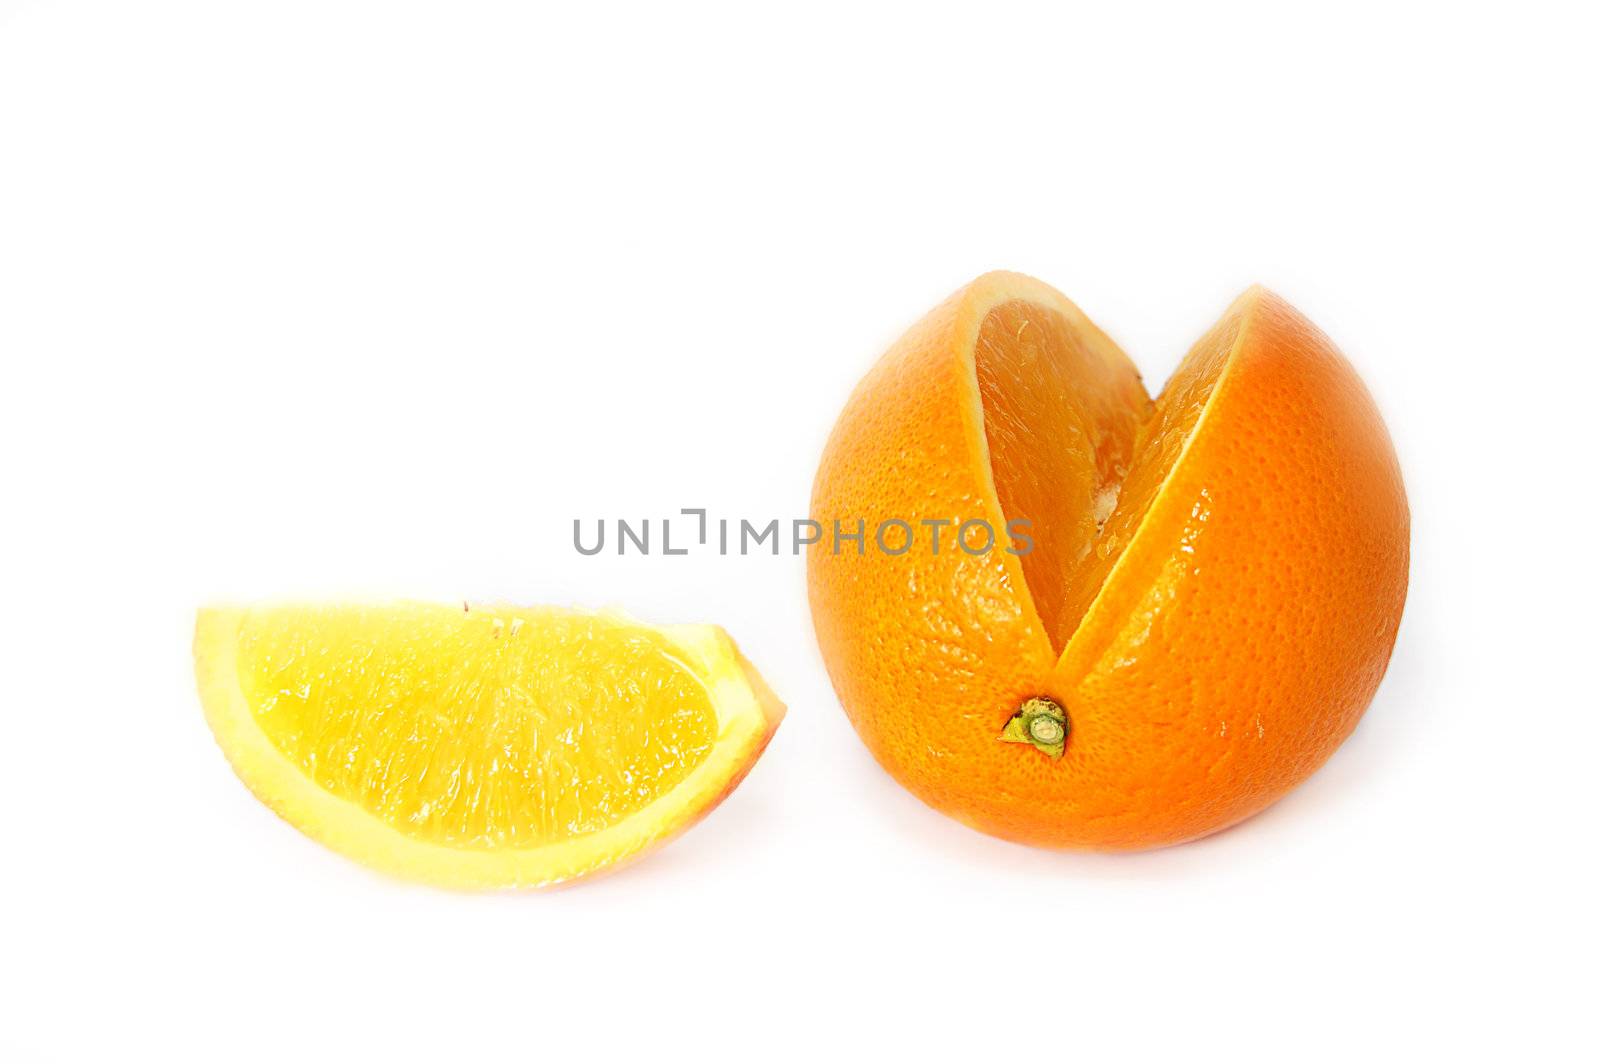 Sweet orange and its slice isolated on white